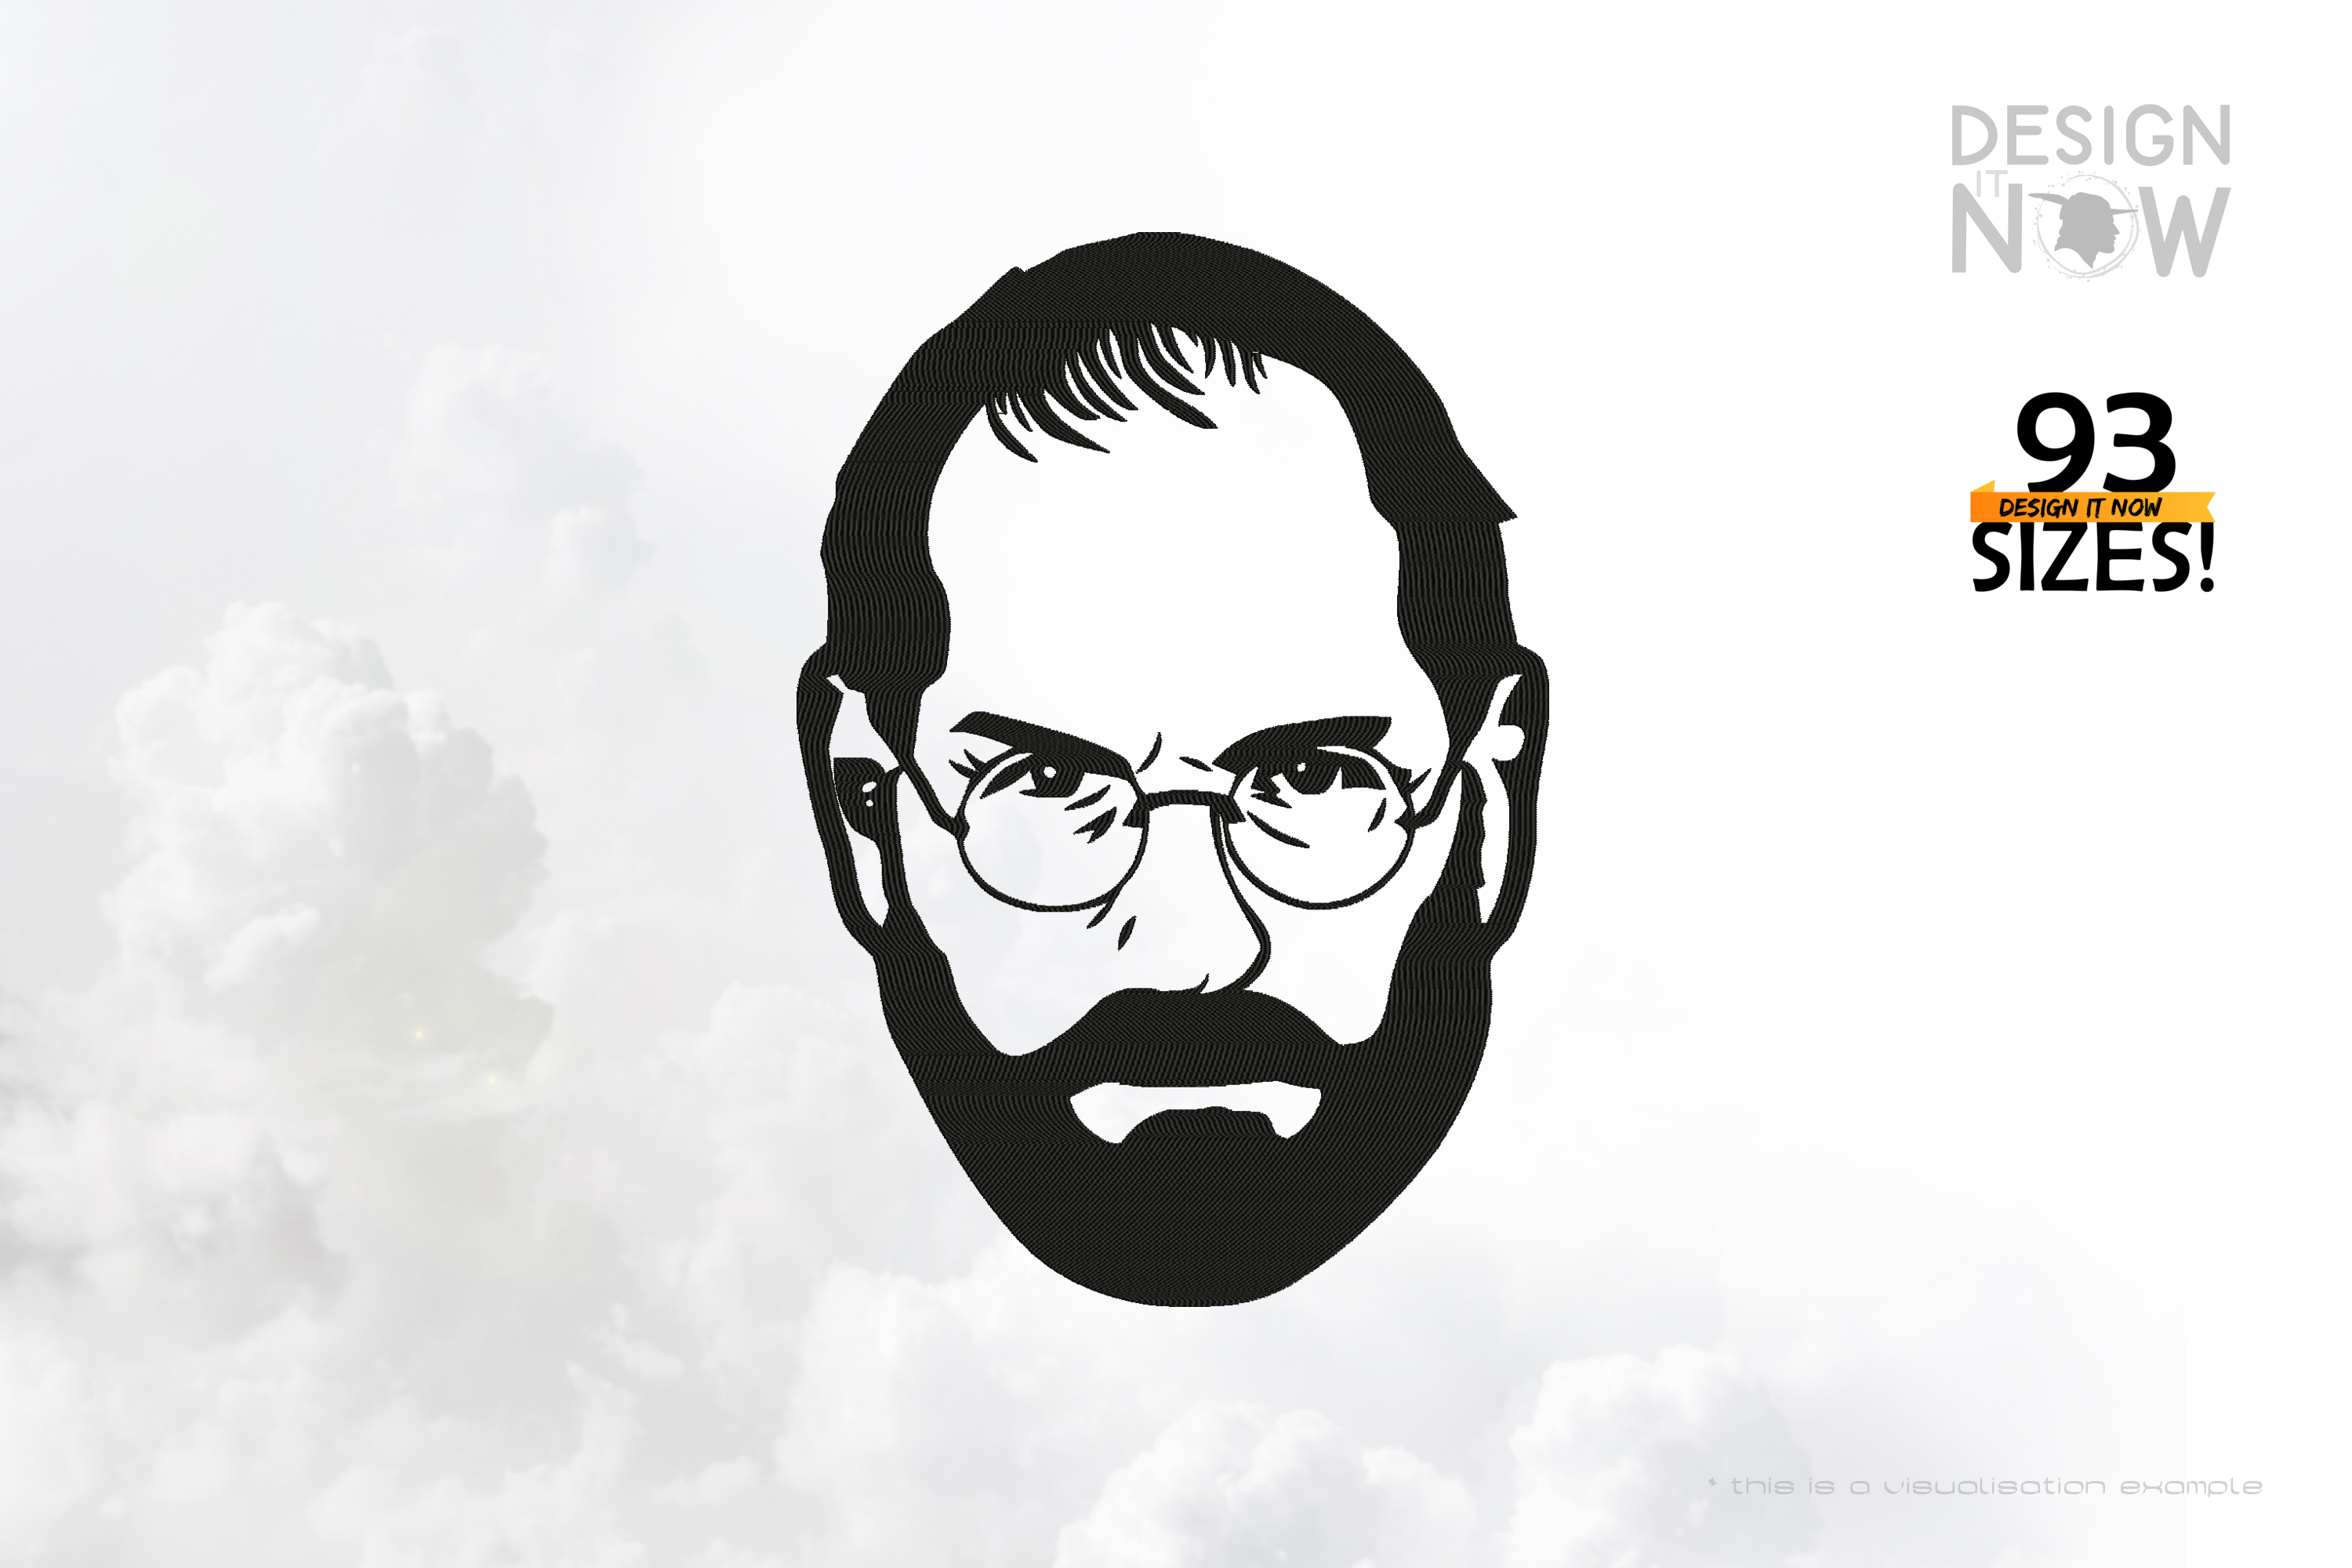 Tribute To Entrepreneur Steven Paul Jobs aka Steve Jobs I